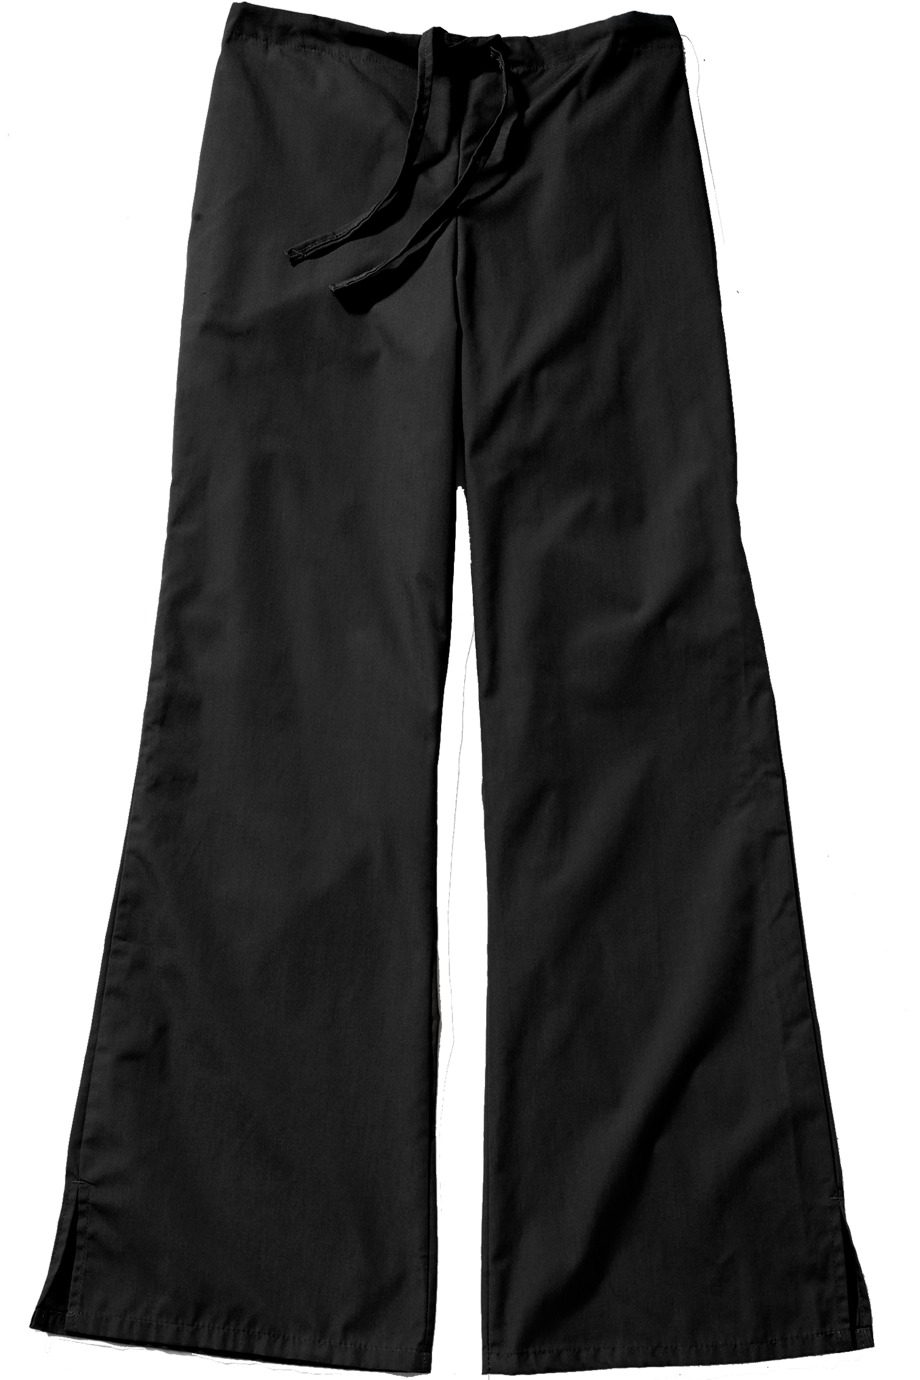 Edwards Garment 8889 - Flare Leg Draw String